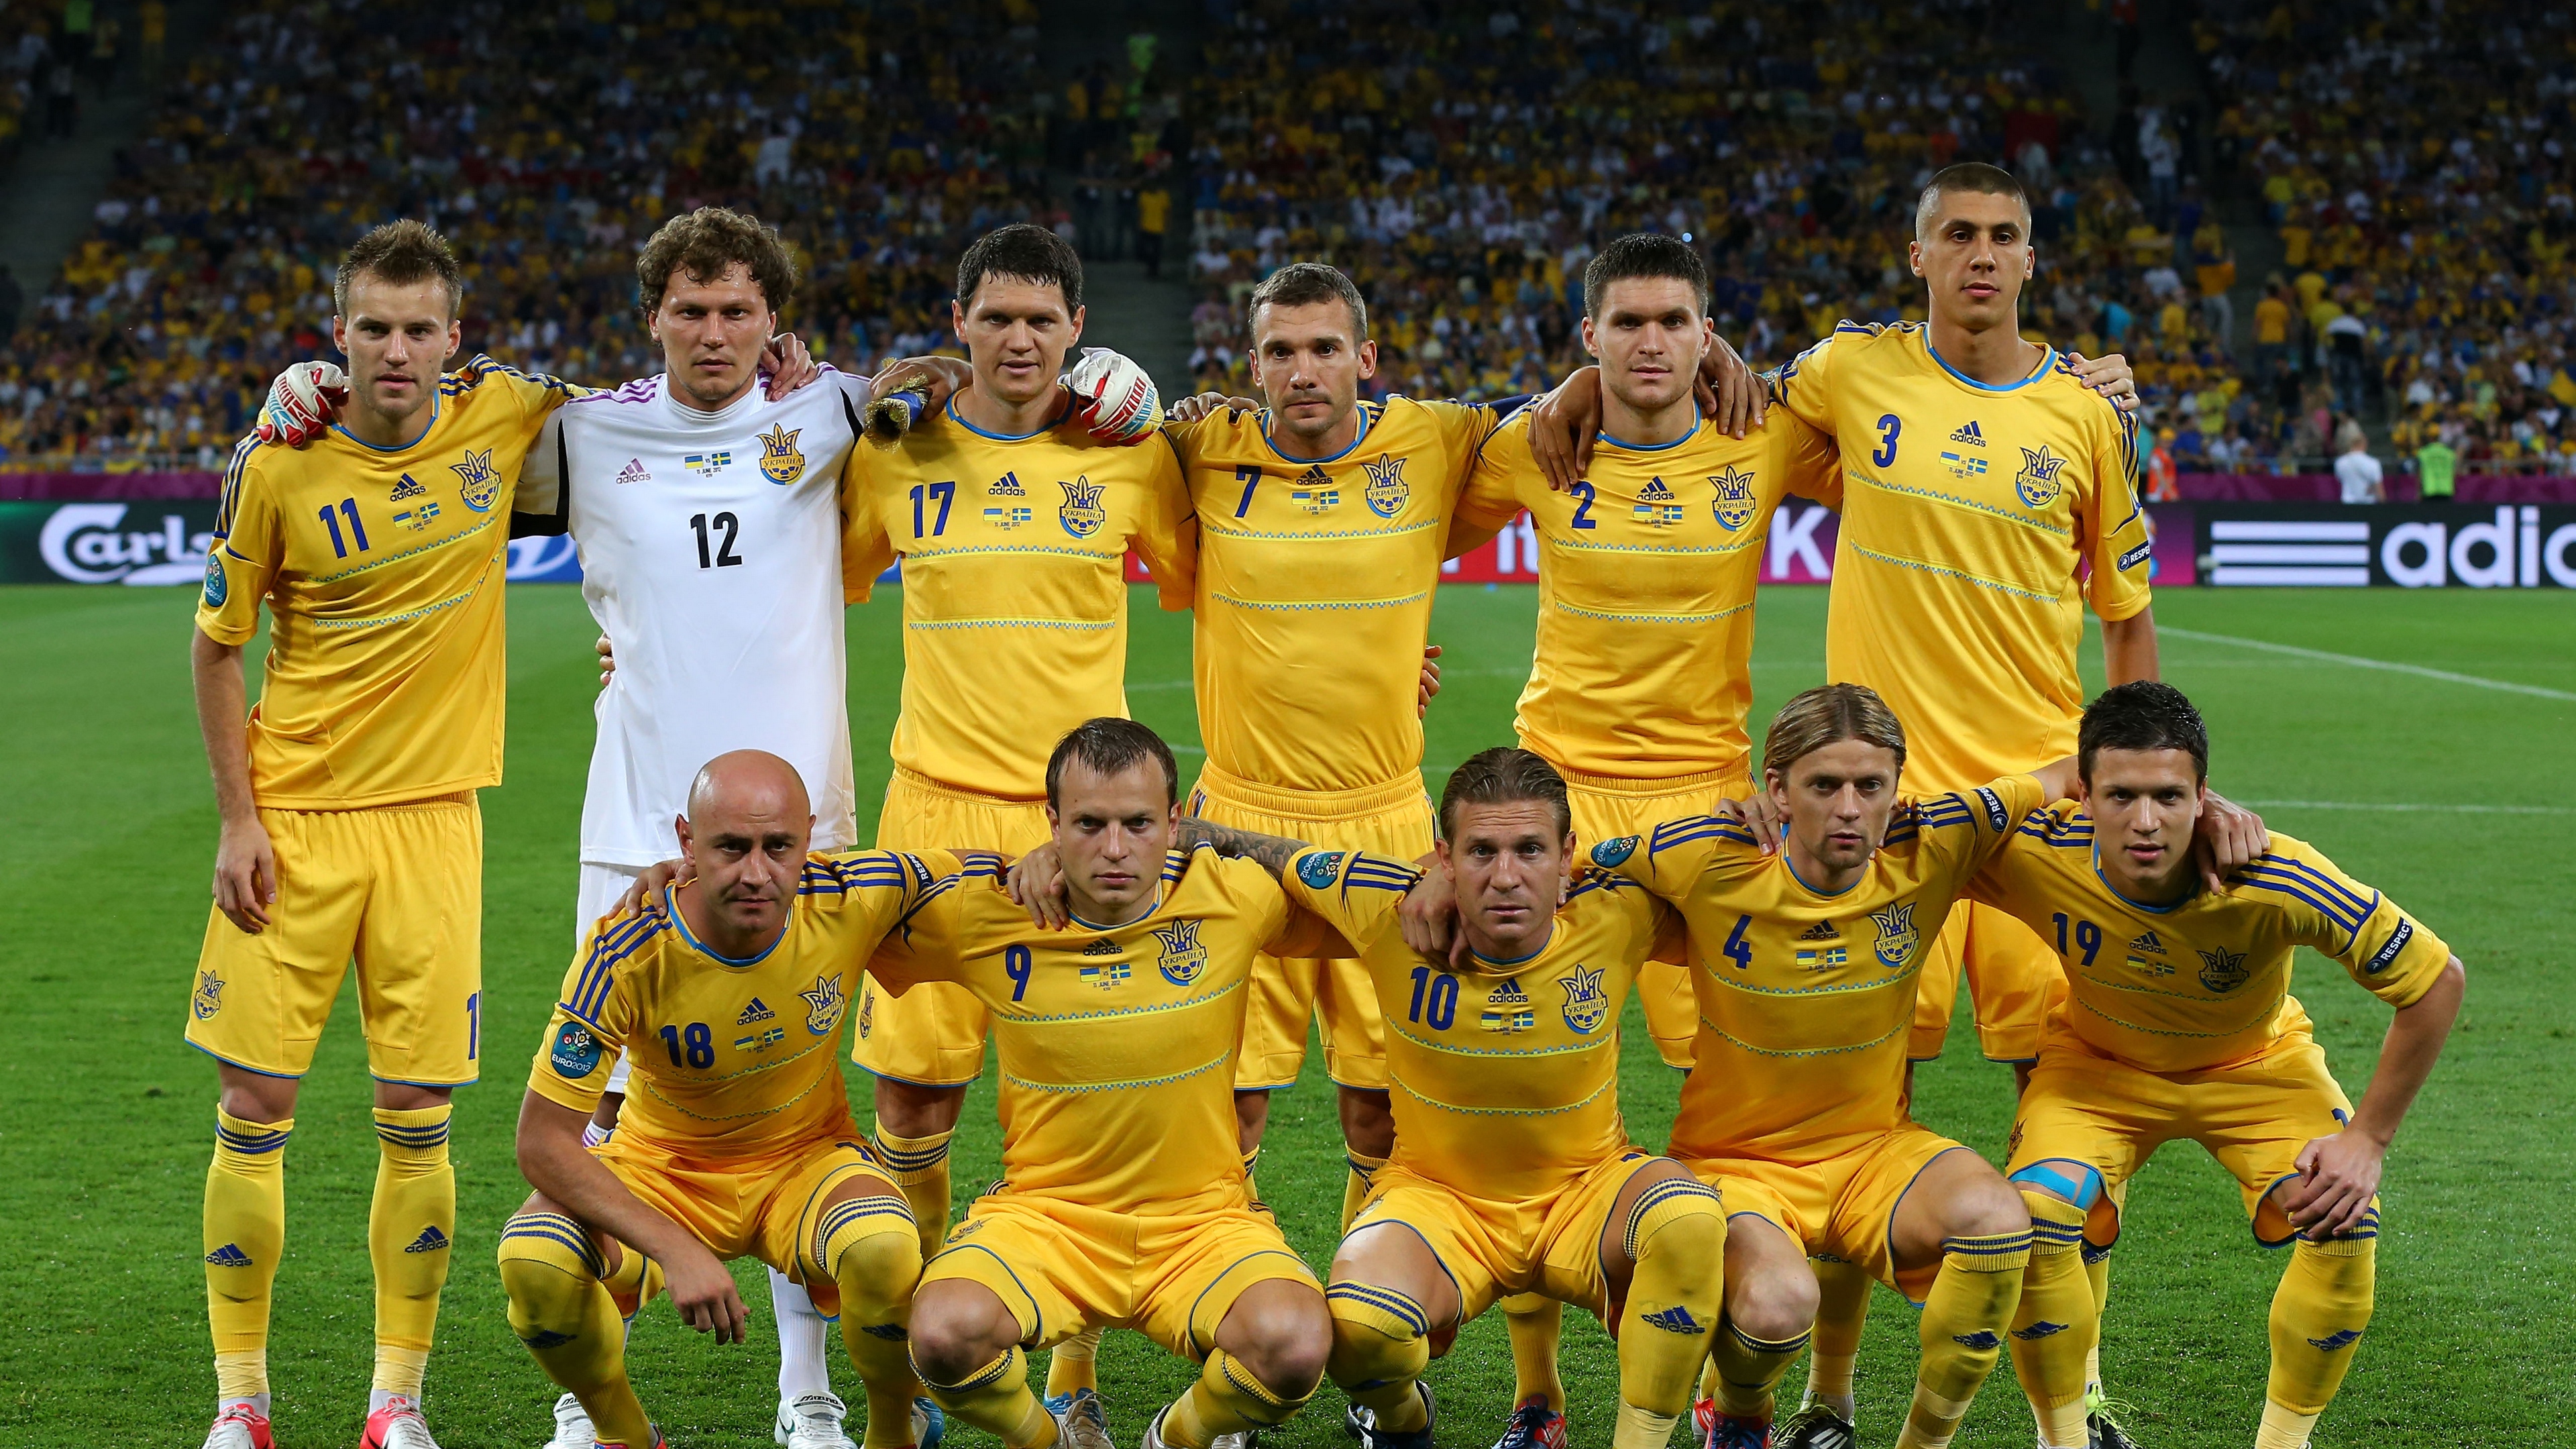 football team of ukraine ukraine 4k 1540062554 - football, team of ukraine, ukraine 4k - Ukraine, team of ukraine, Football